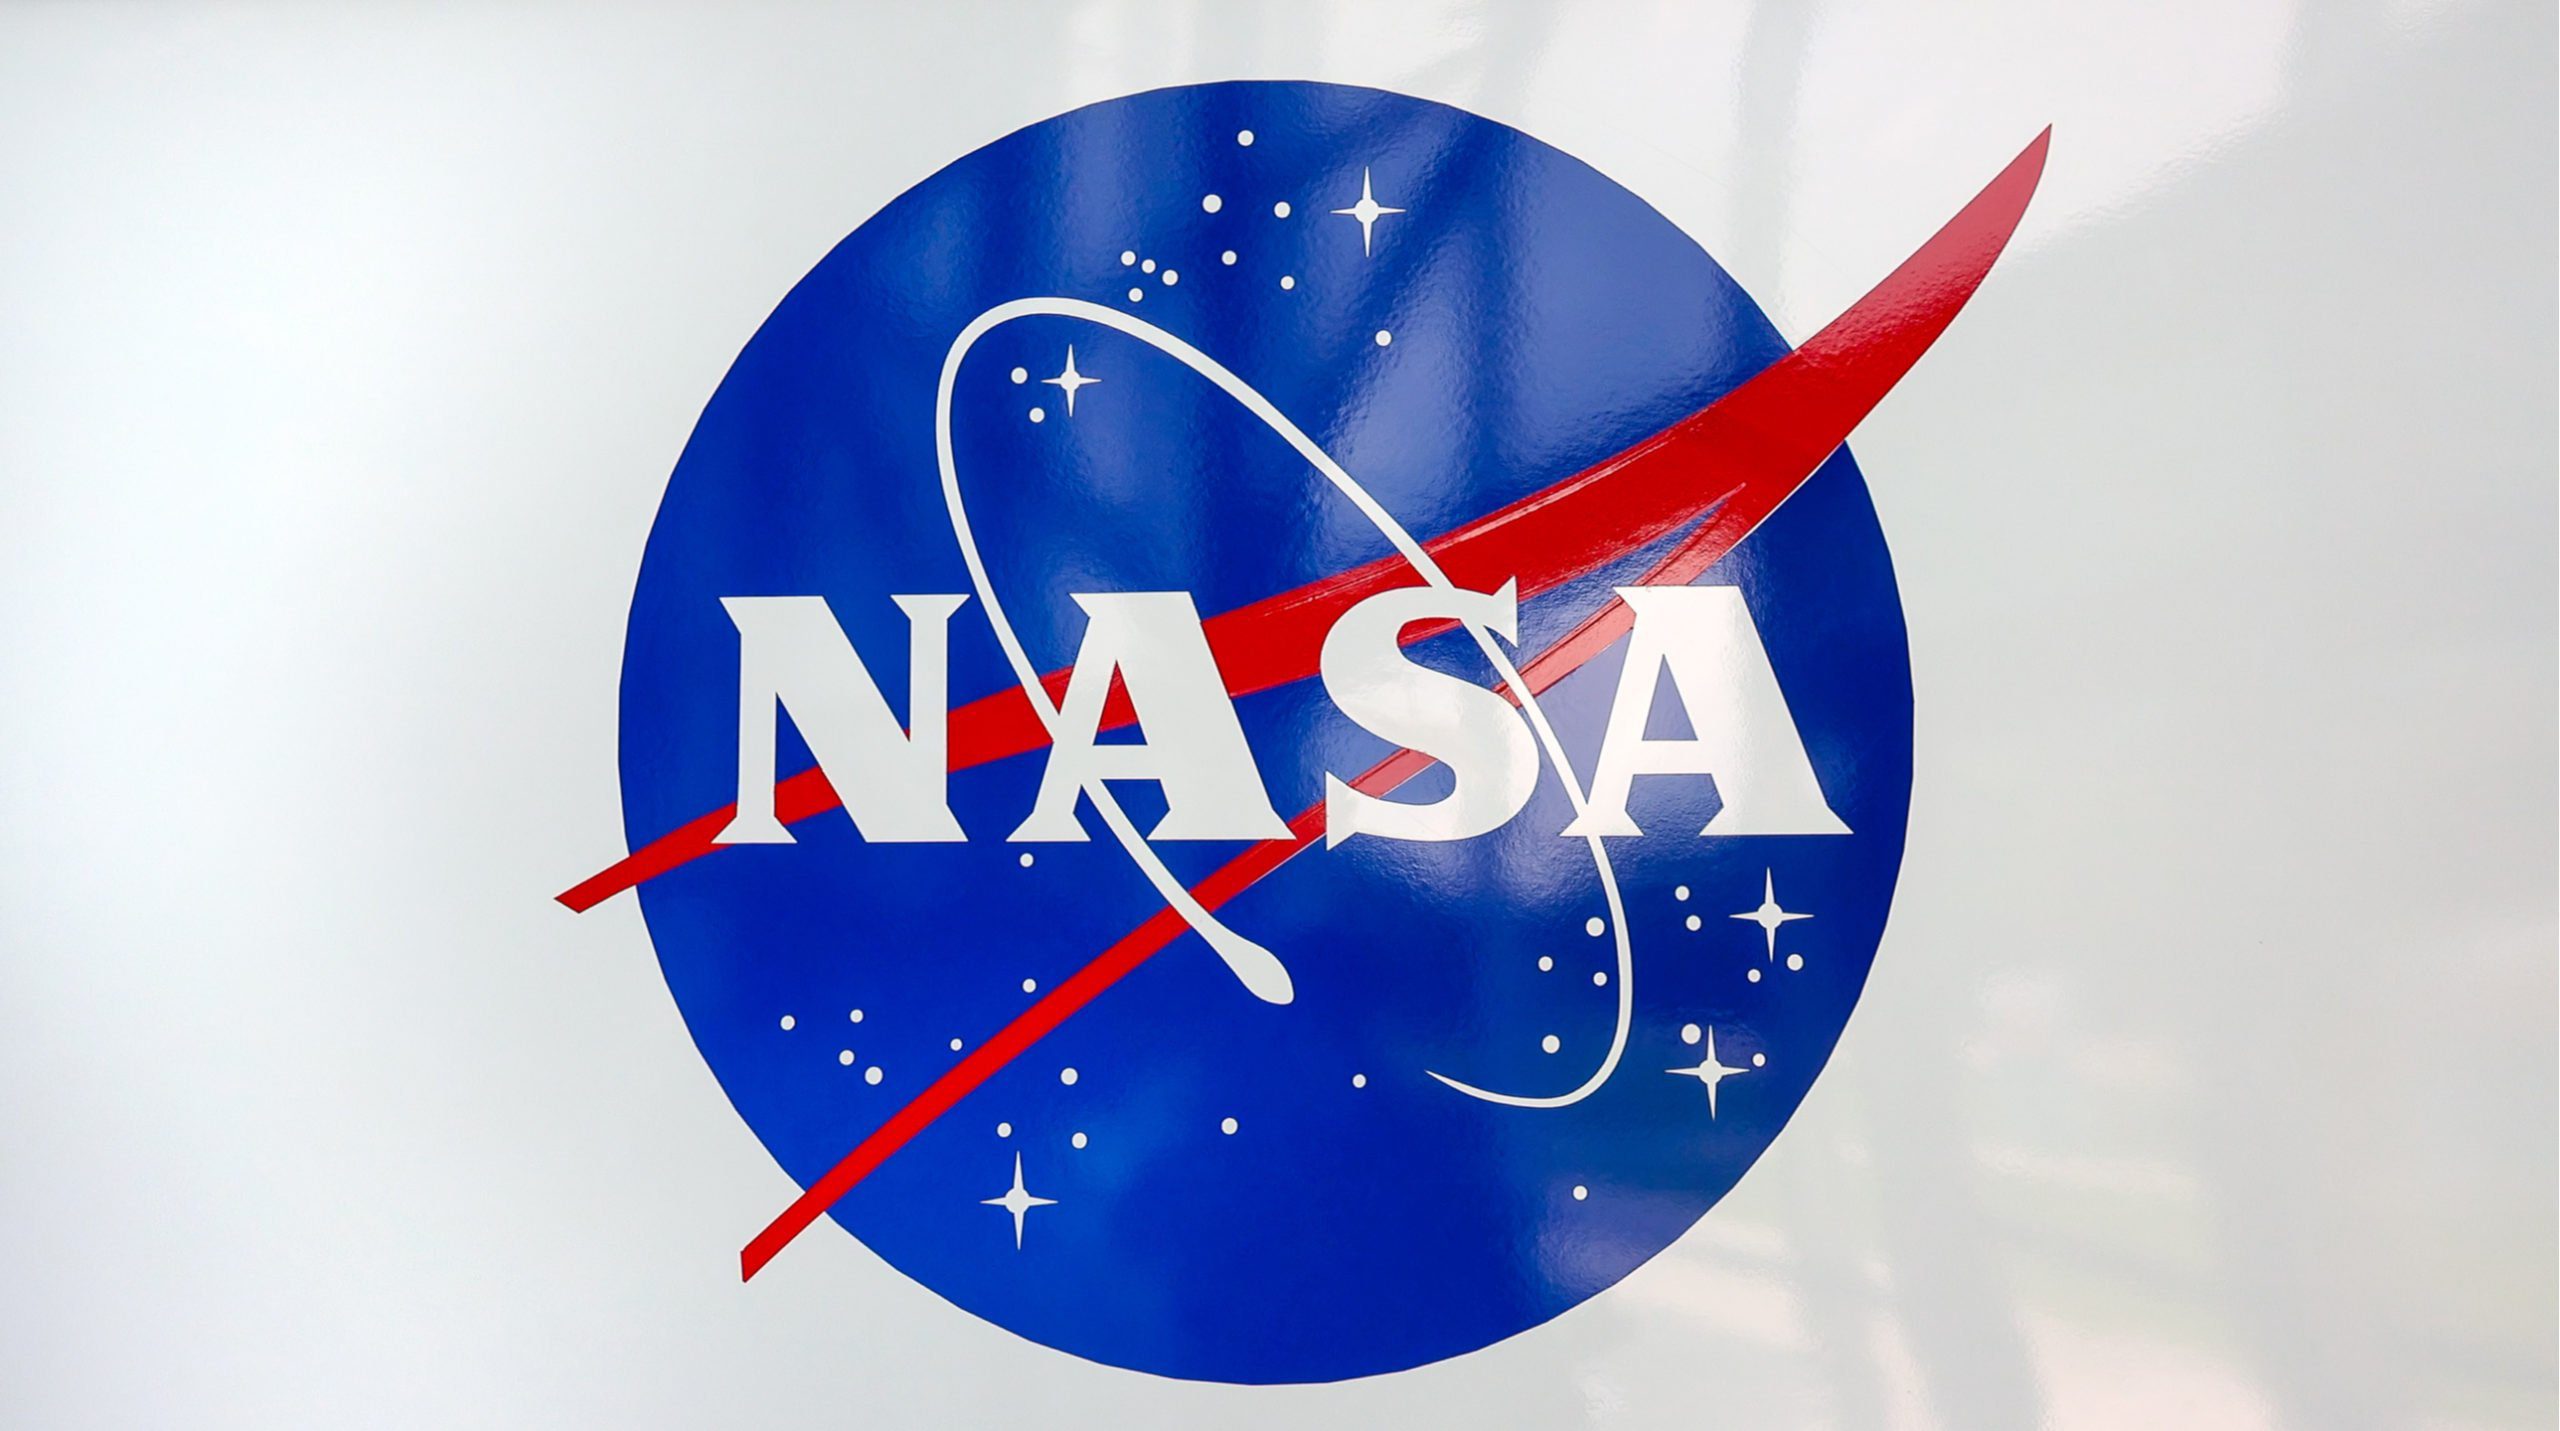 تبحث ناسا عن شركات خاصة للمساعدة في الحفاظ على محطة الفضاء الدولية وبناء محطات مستقبلية